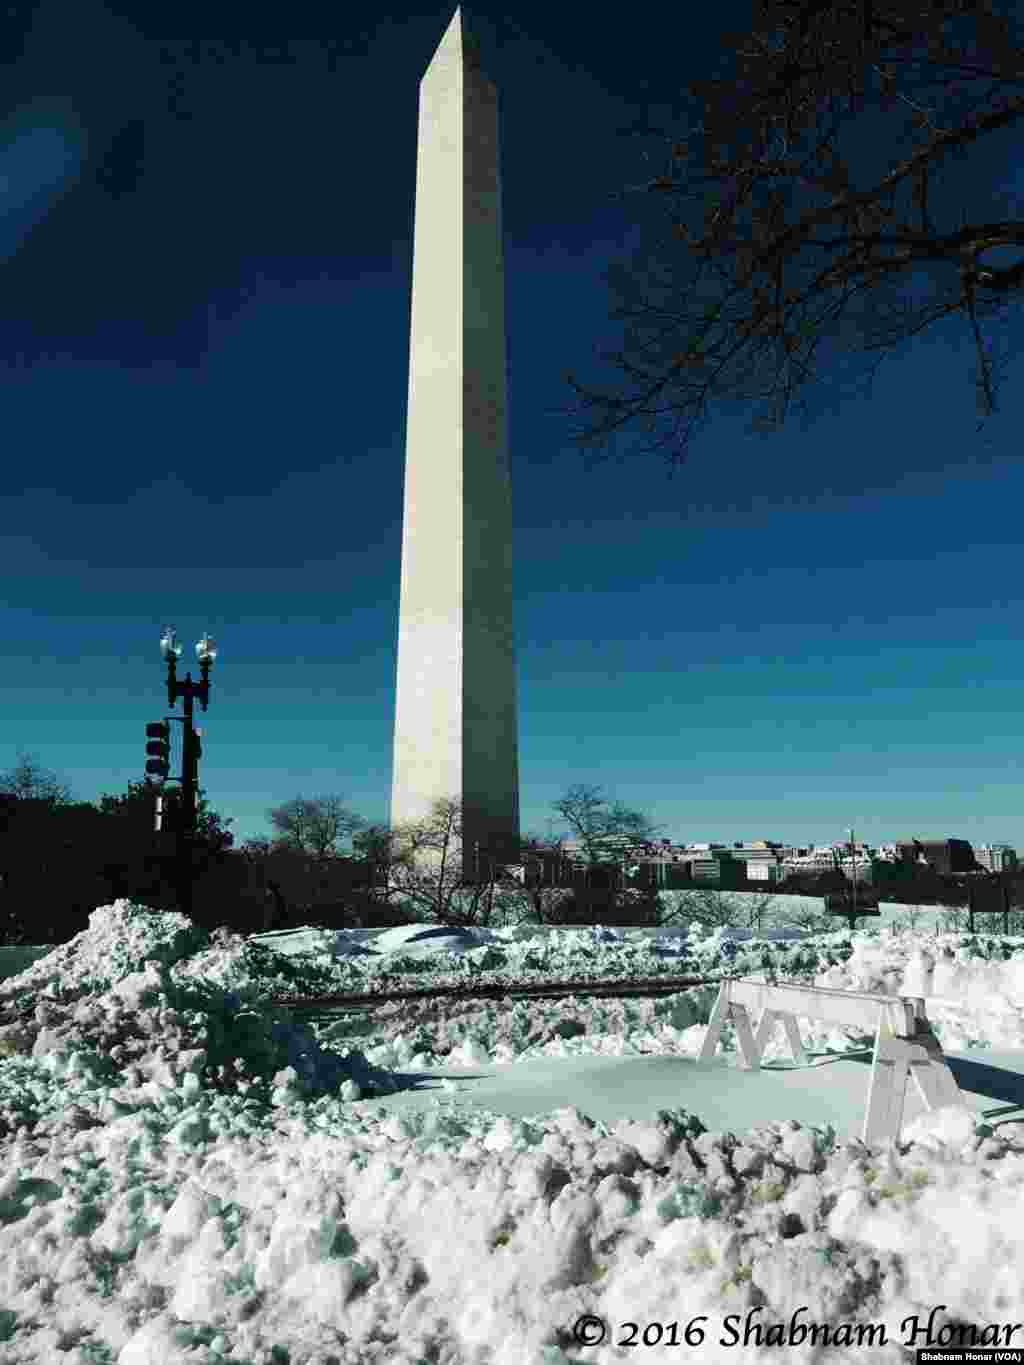 بنای یادبود واشنگتن در وسط شهر. روز یکشنبه بعد از دو روز کولاک و برف، هوا آفتاب شد. این عکس را همکارمان شبنم گرفته است.